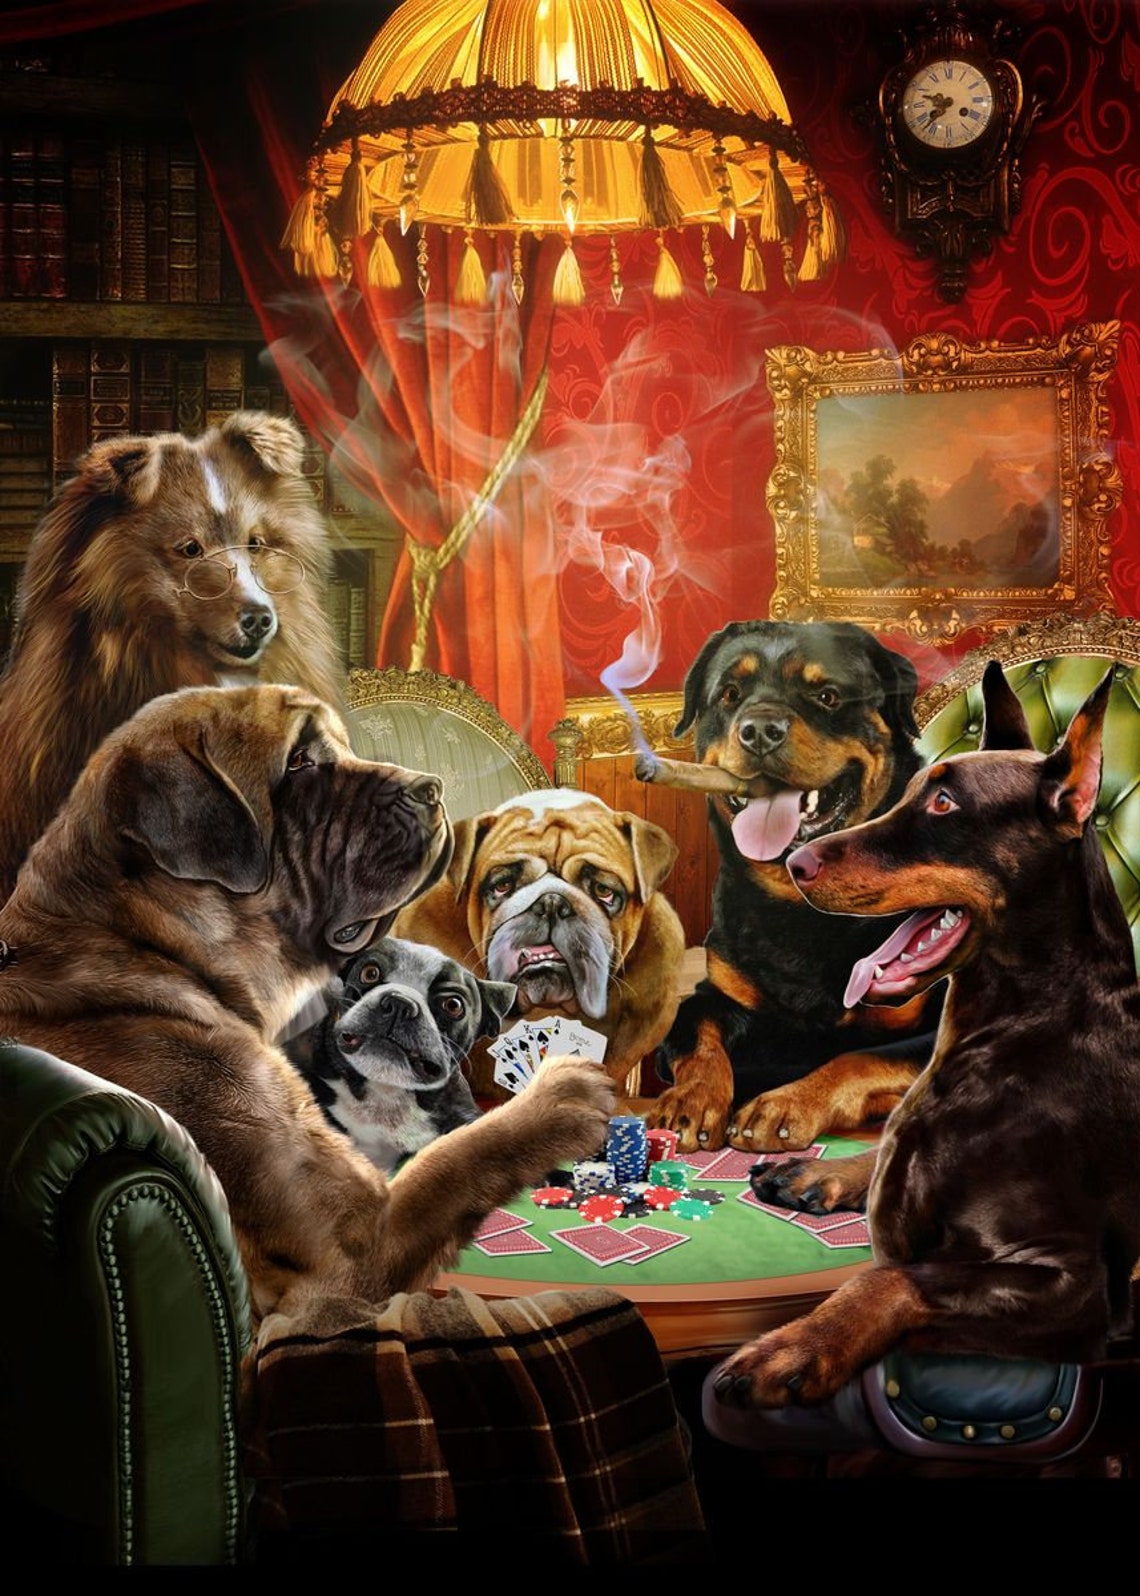 poker l